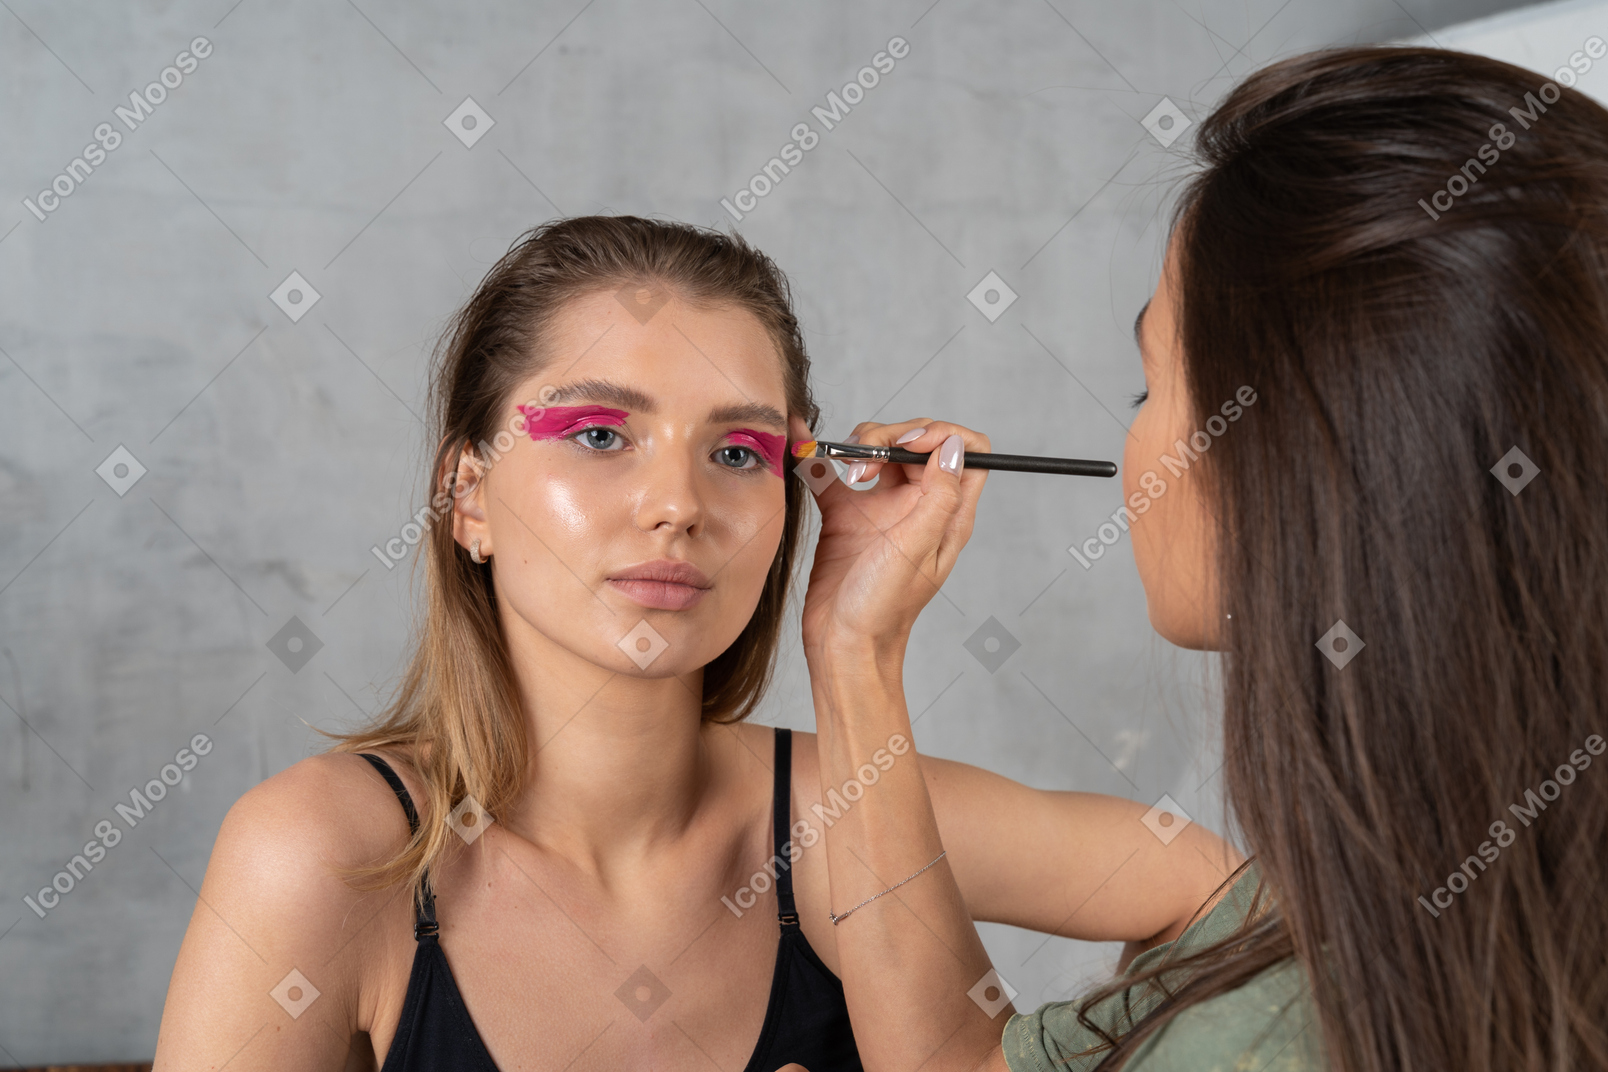 Вид спереди молодой женщины с ярко-розовым макияжем глаз и ее визажиста